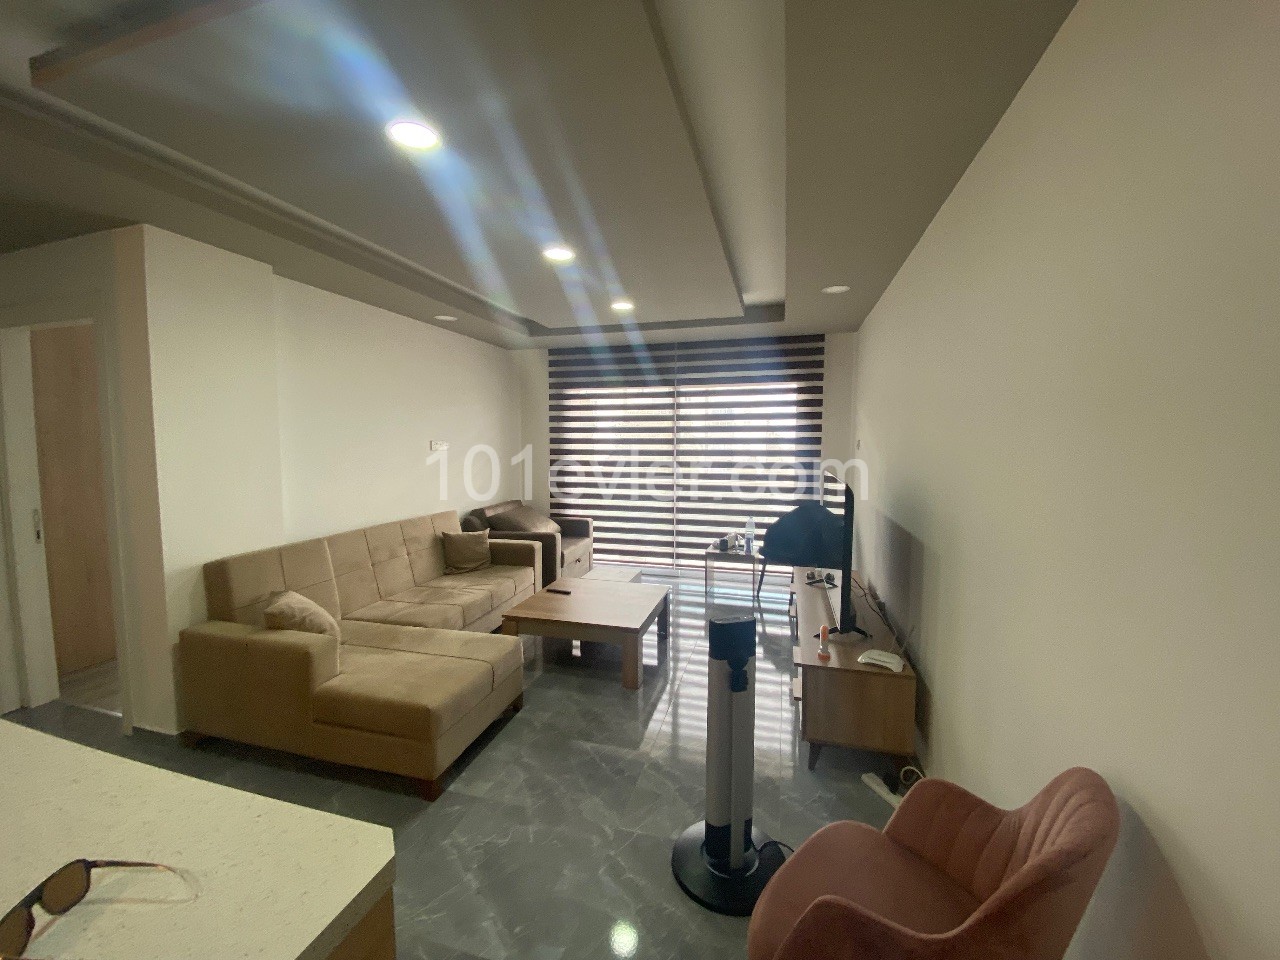 Квартира продается в центре Кирении с высокой доходностью от аренды ! ** 